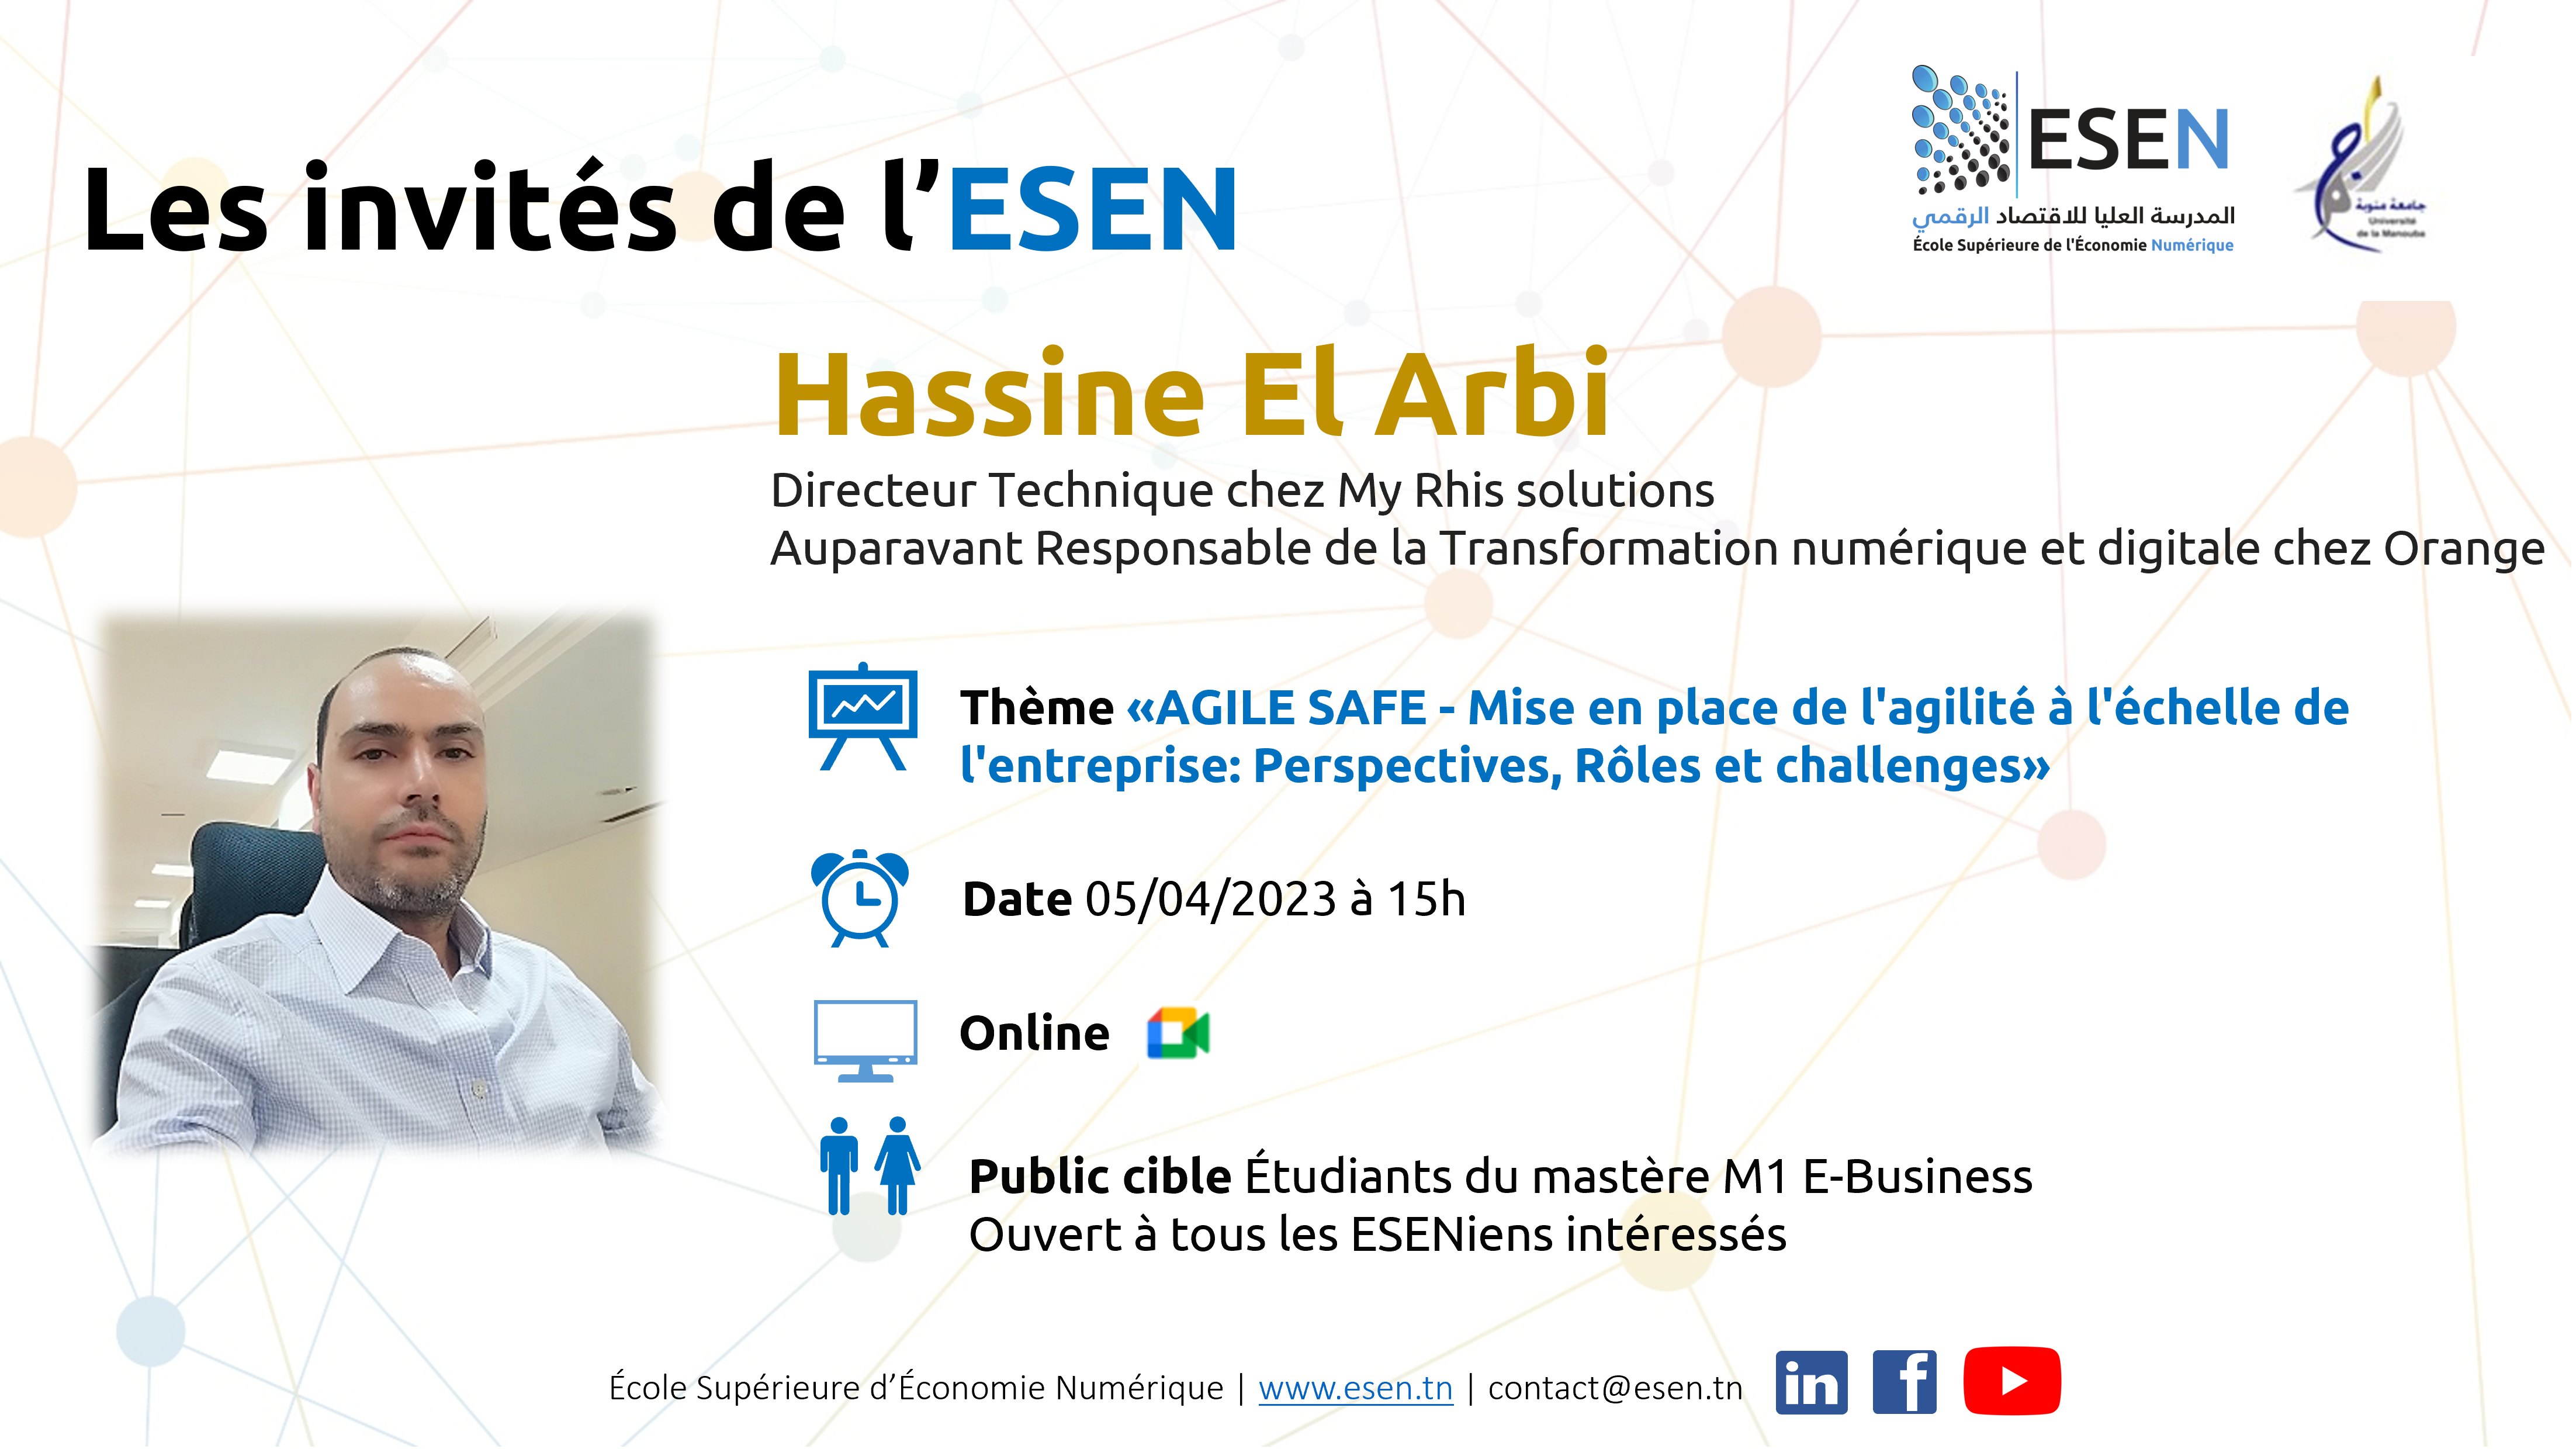 M. Hassine El Arbi invité de l'ESEN